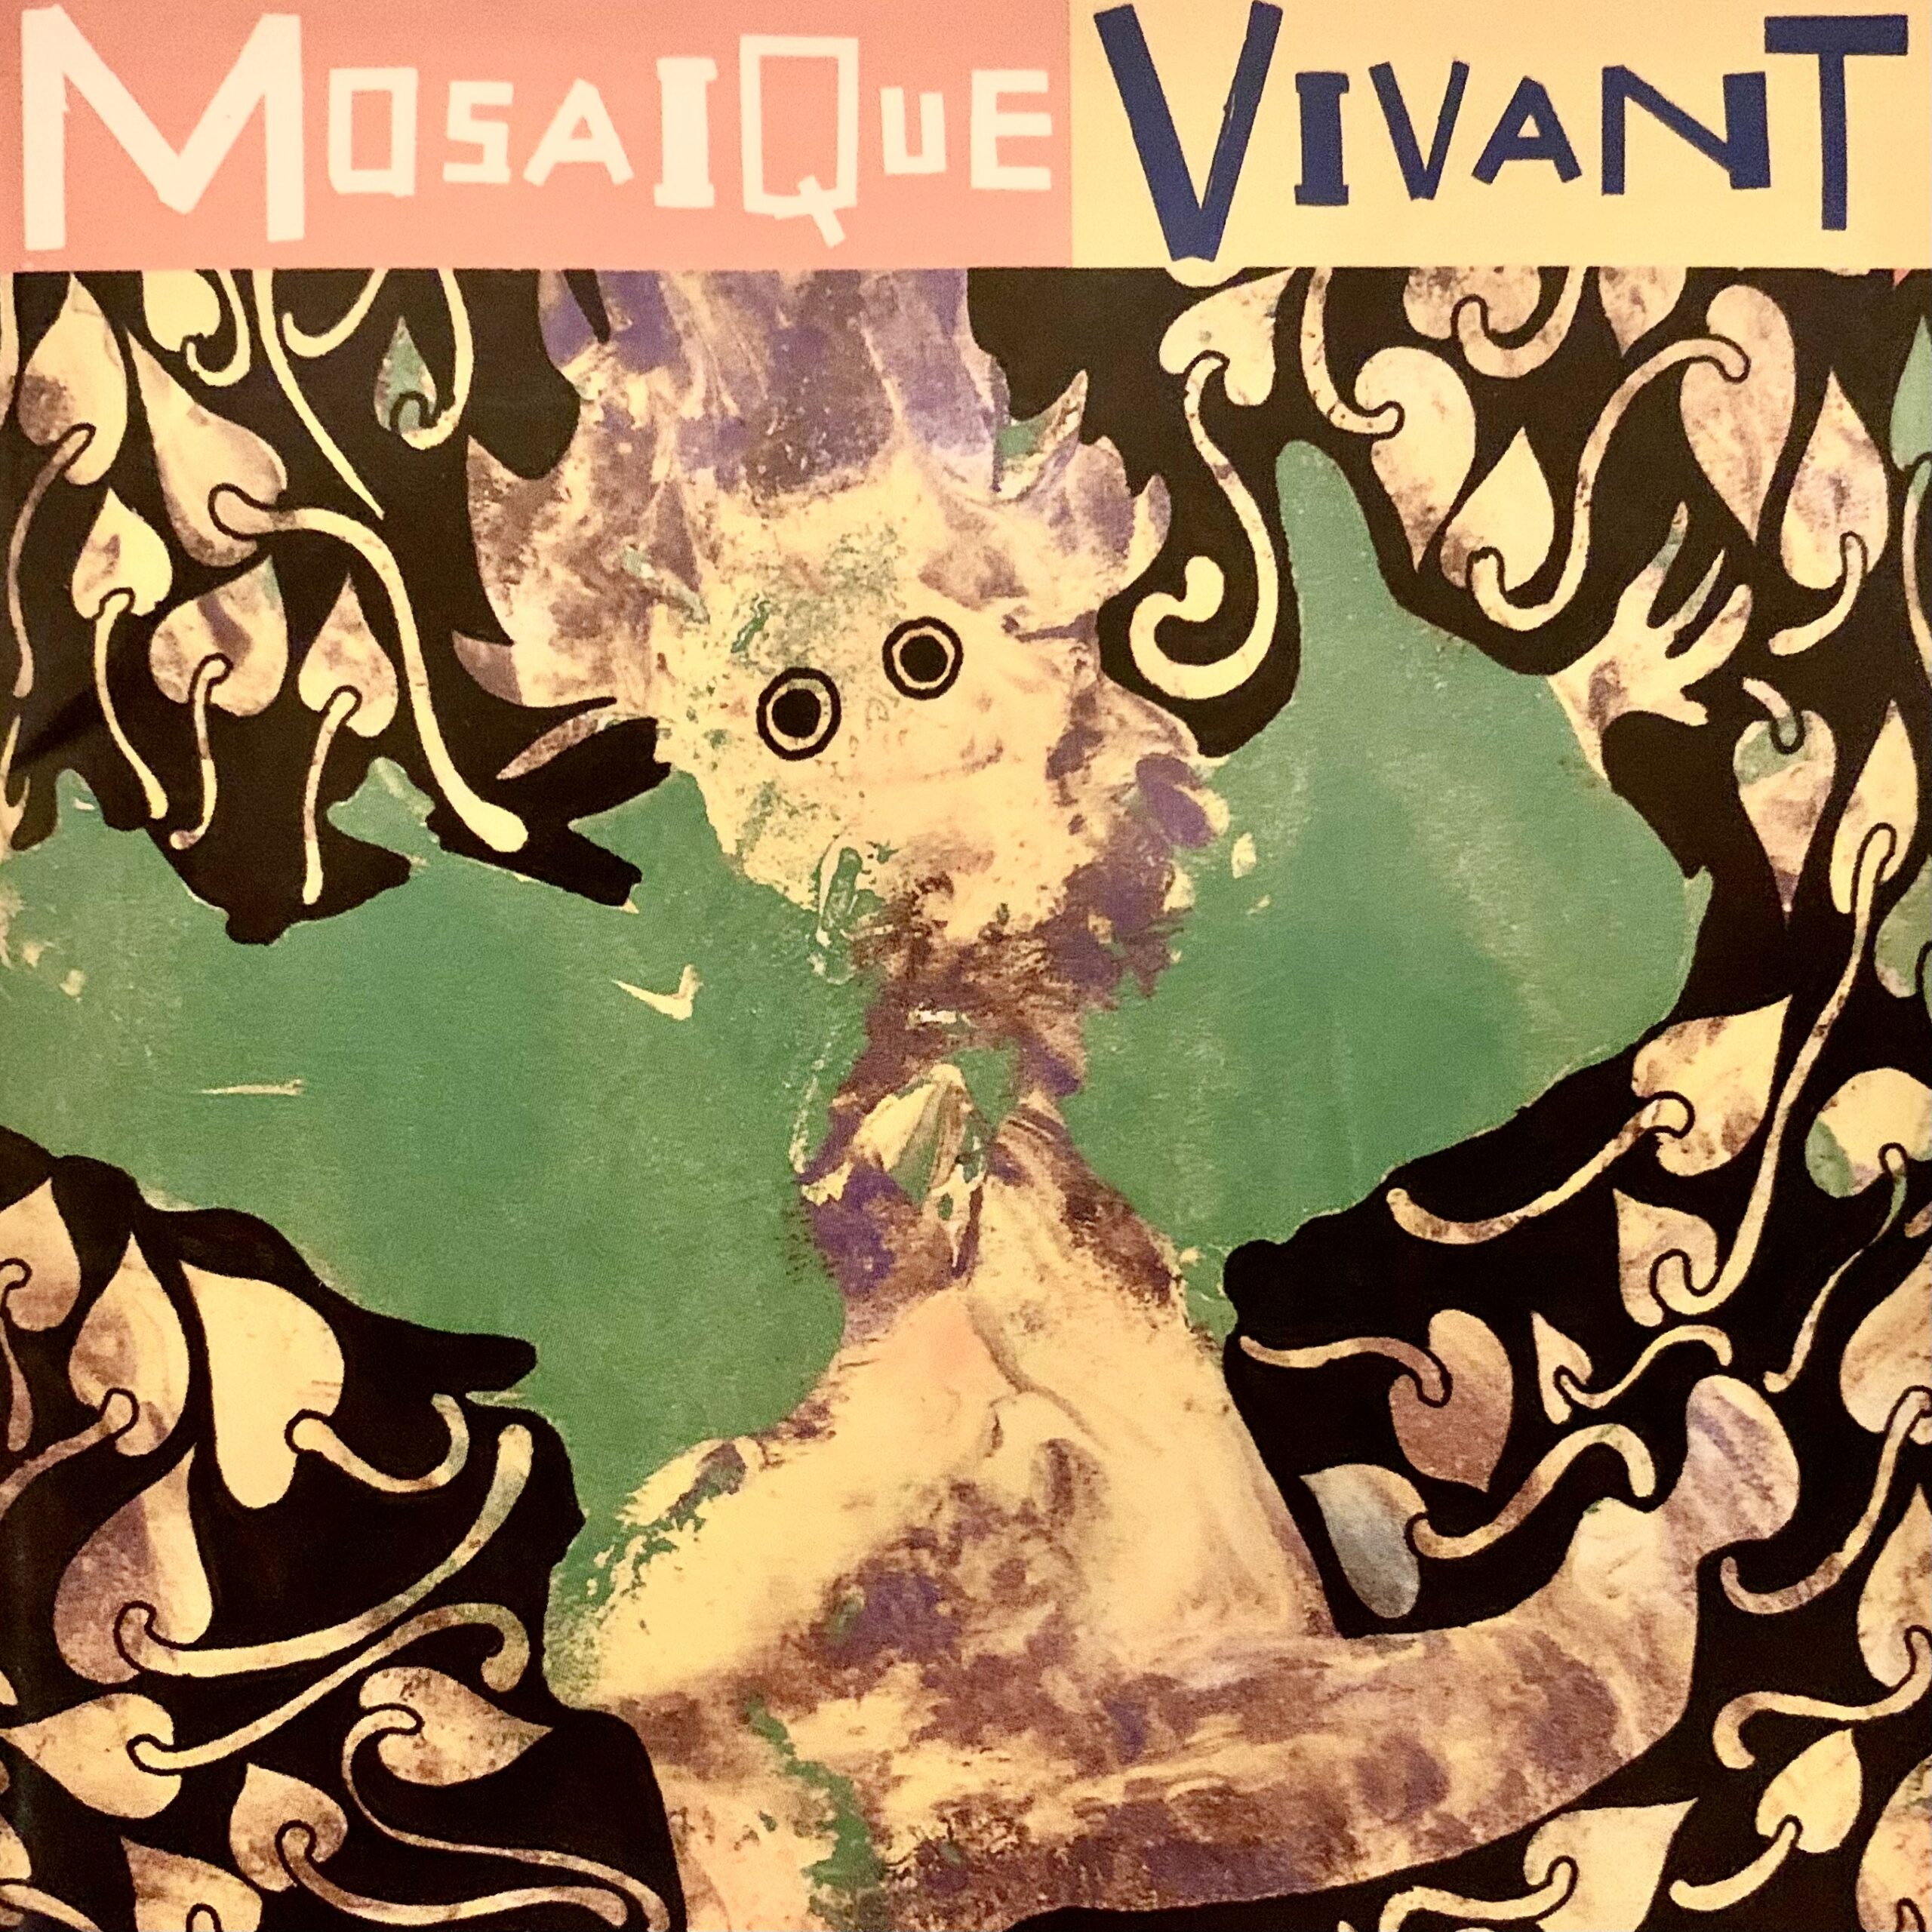 Various artists - Mosaique Vivant (MV695, 1995)